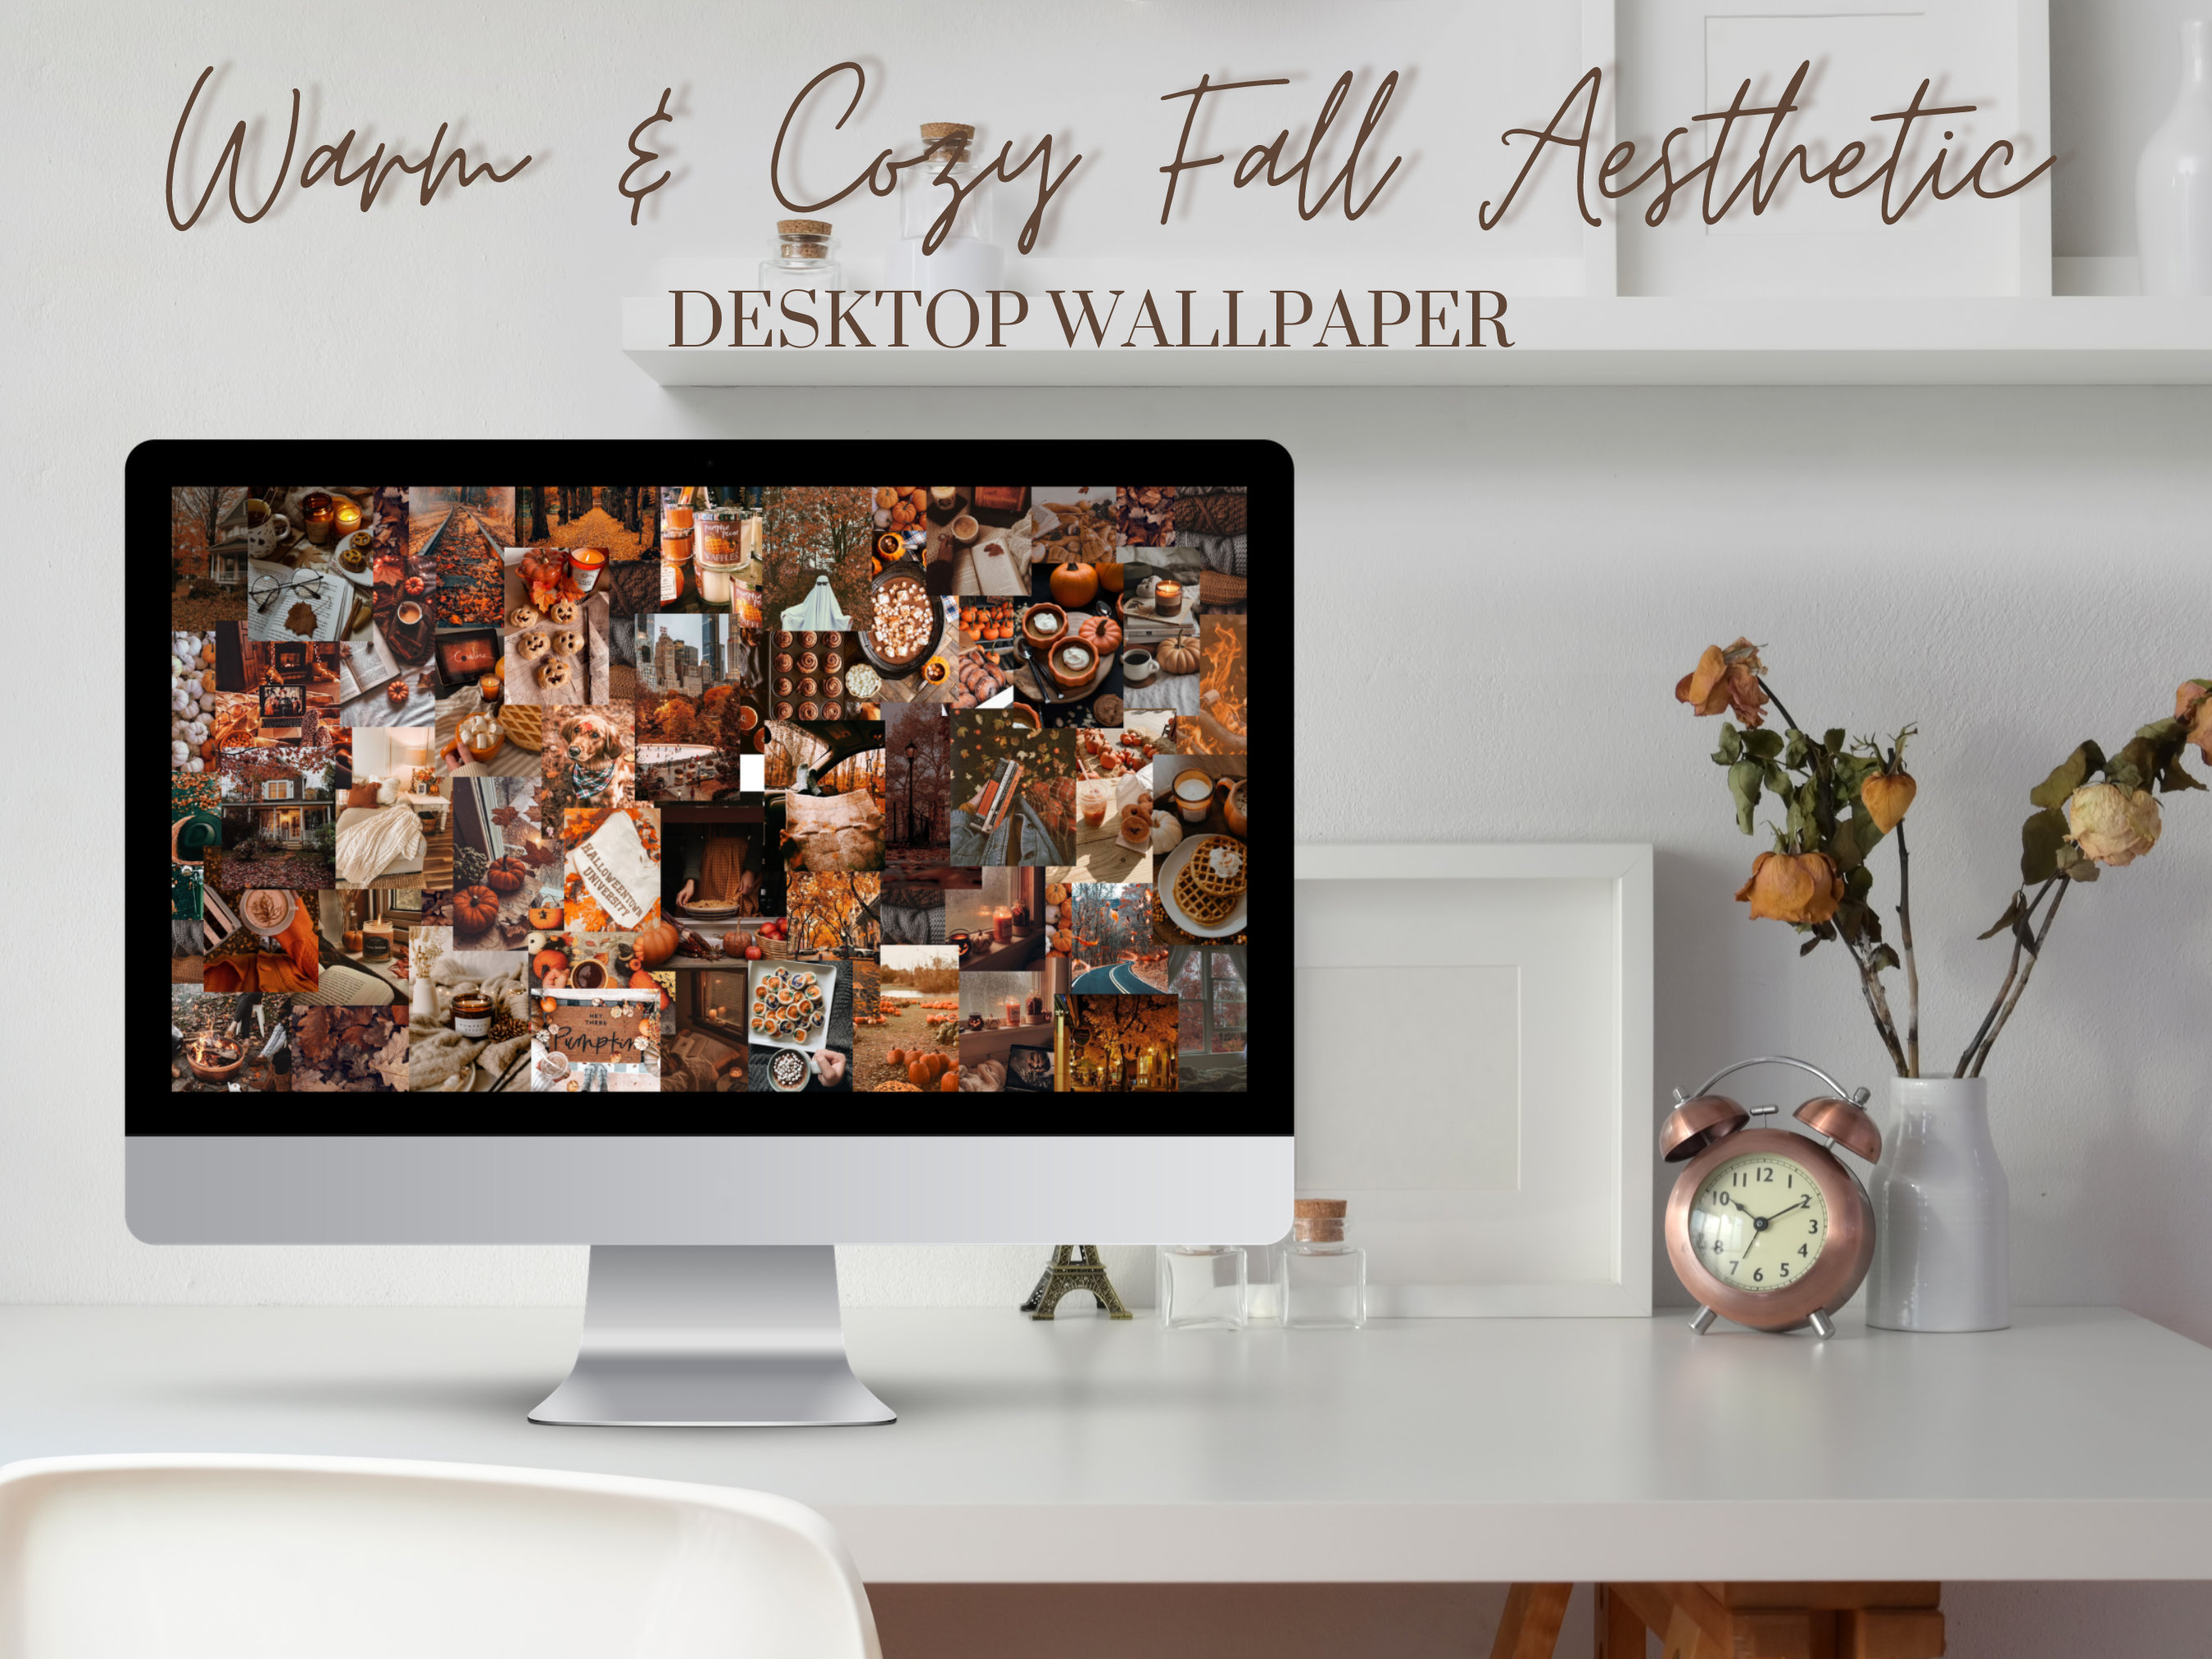 Aesthetic Desktop Wallpaper by paulgiron on DeviantArt